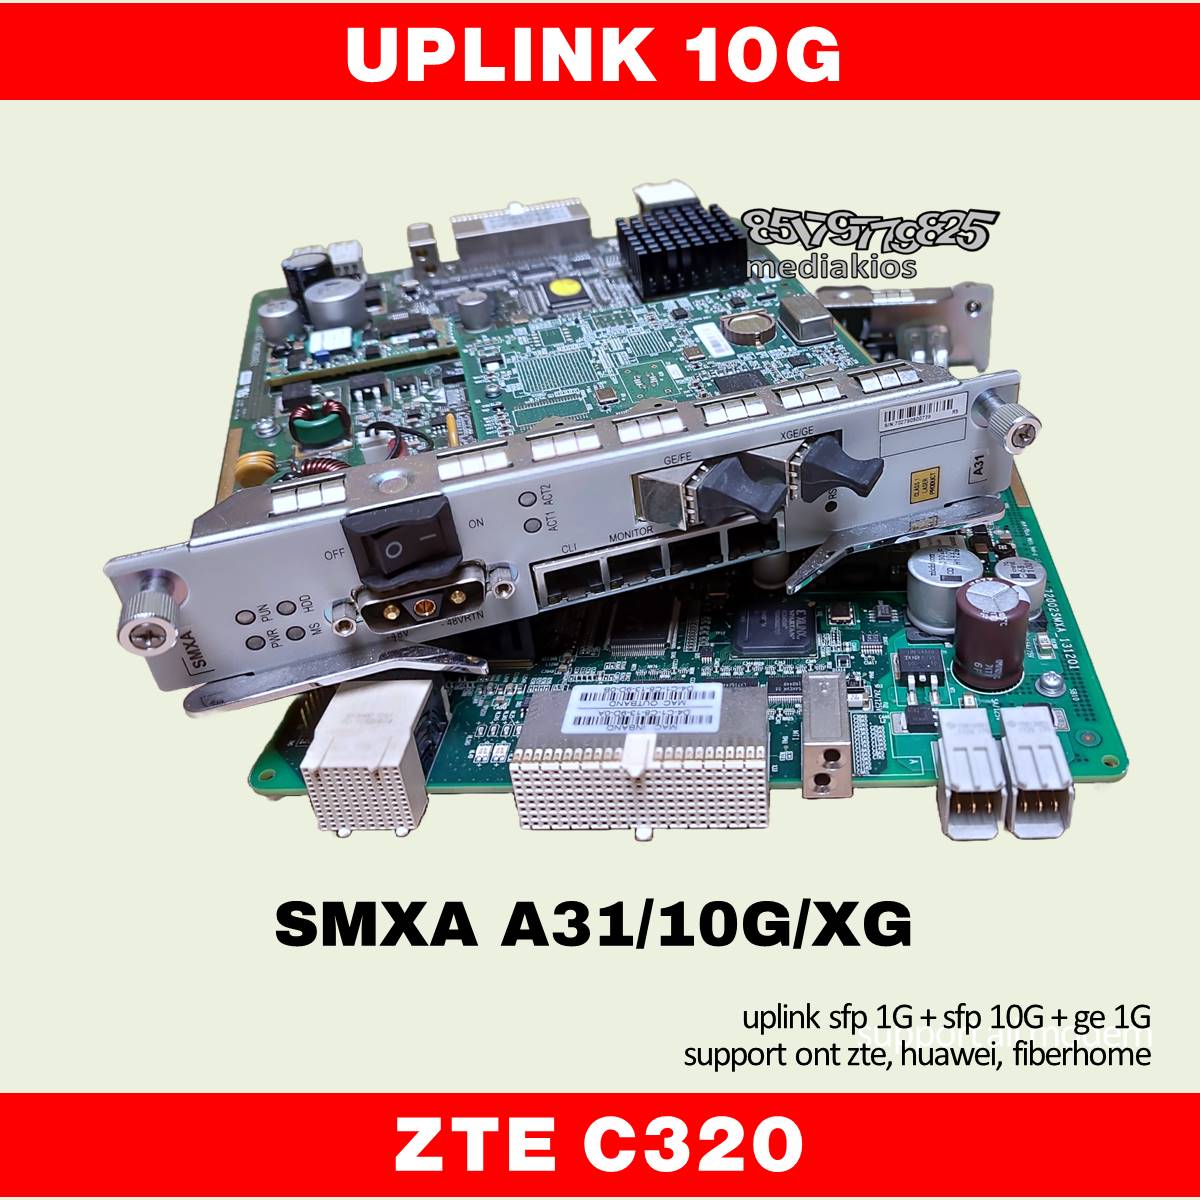 uplink 10g smxa a31 olt zte c320 support all modem